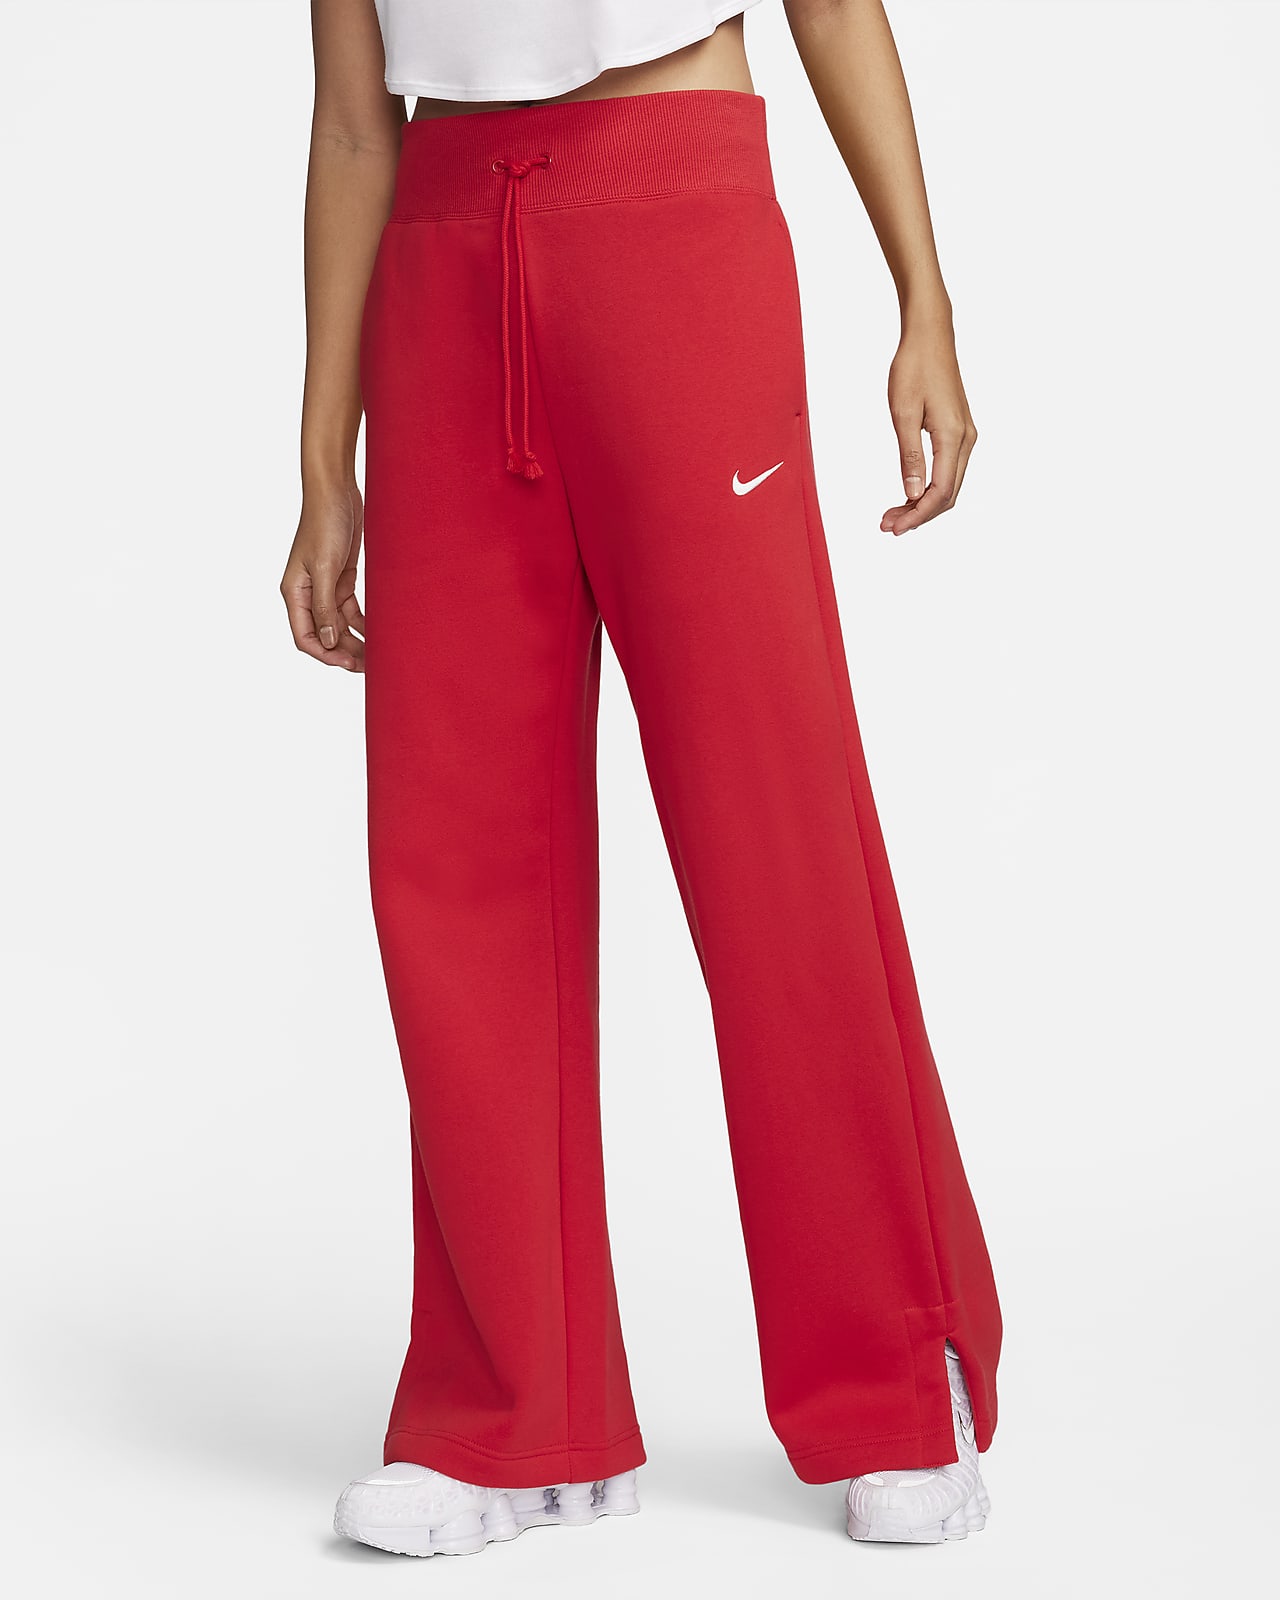 Dámské tepláky s širokými nohavicemi a vysokým pasem Nike Sportswear Phoenix Fleece 